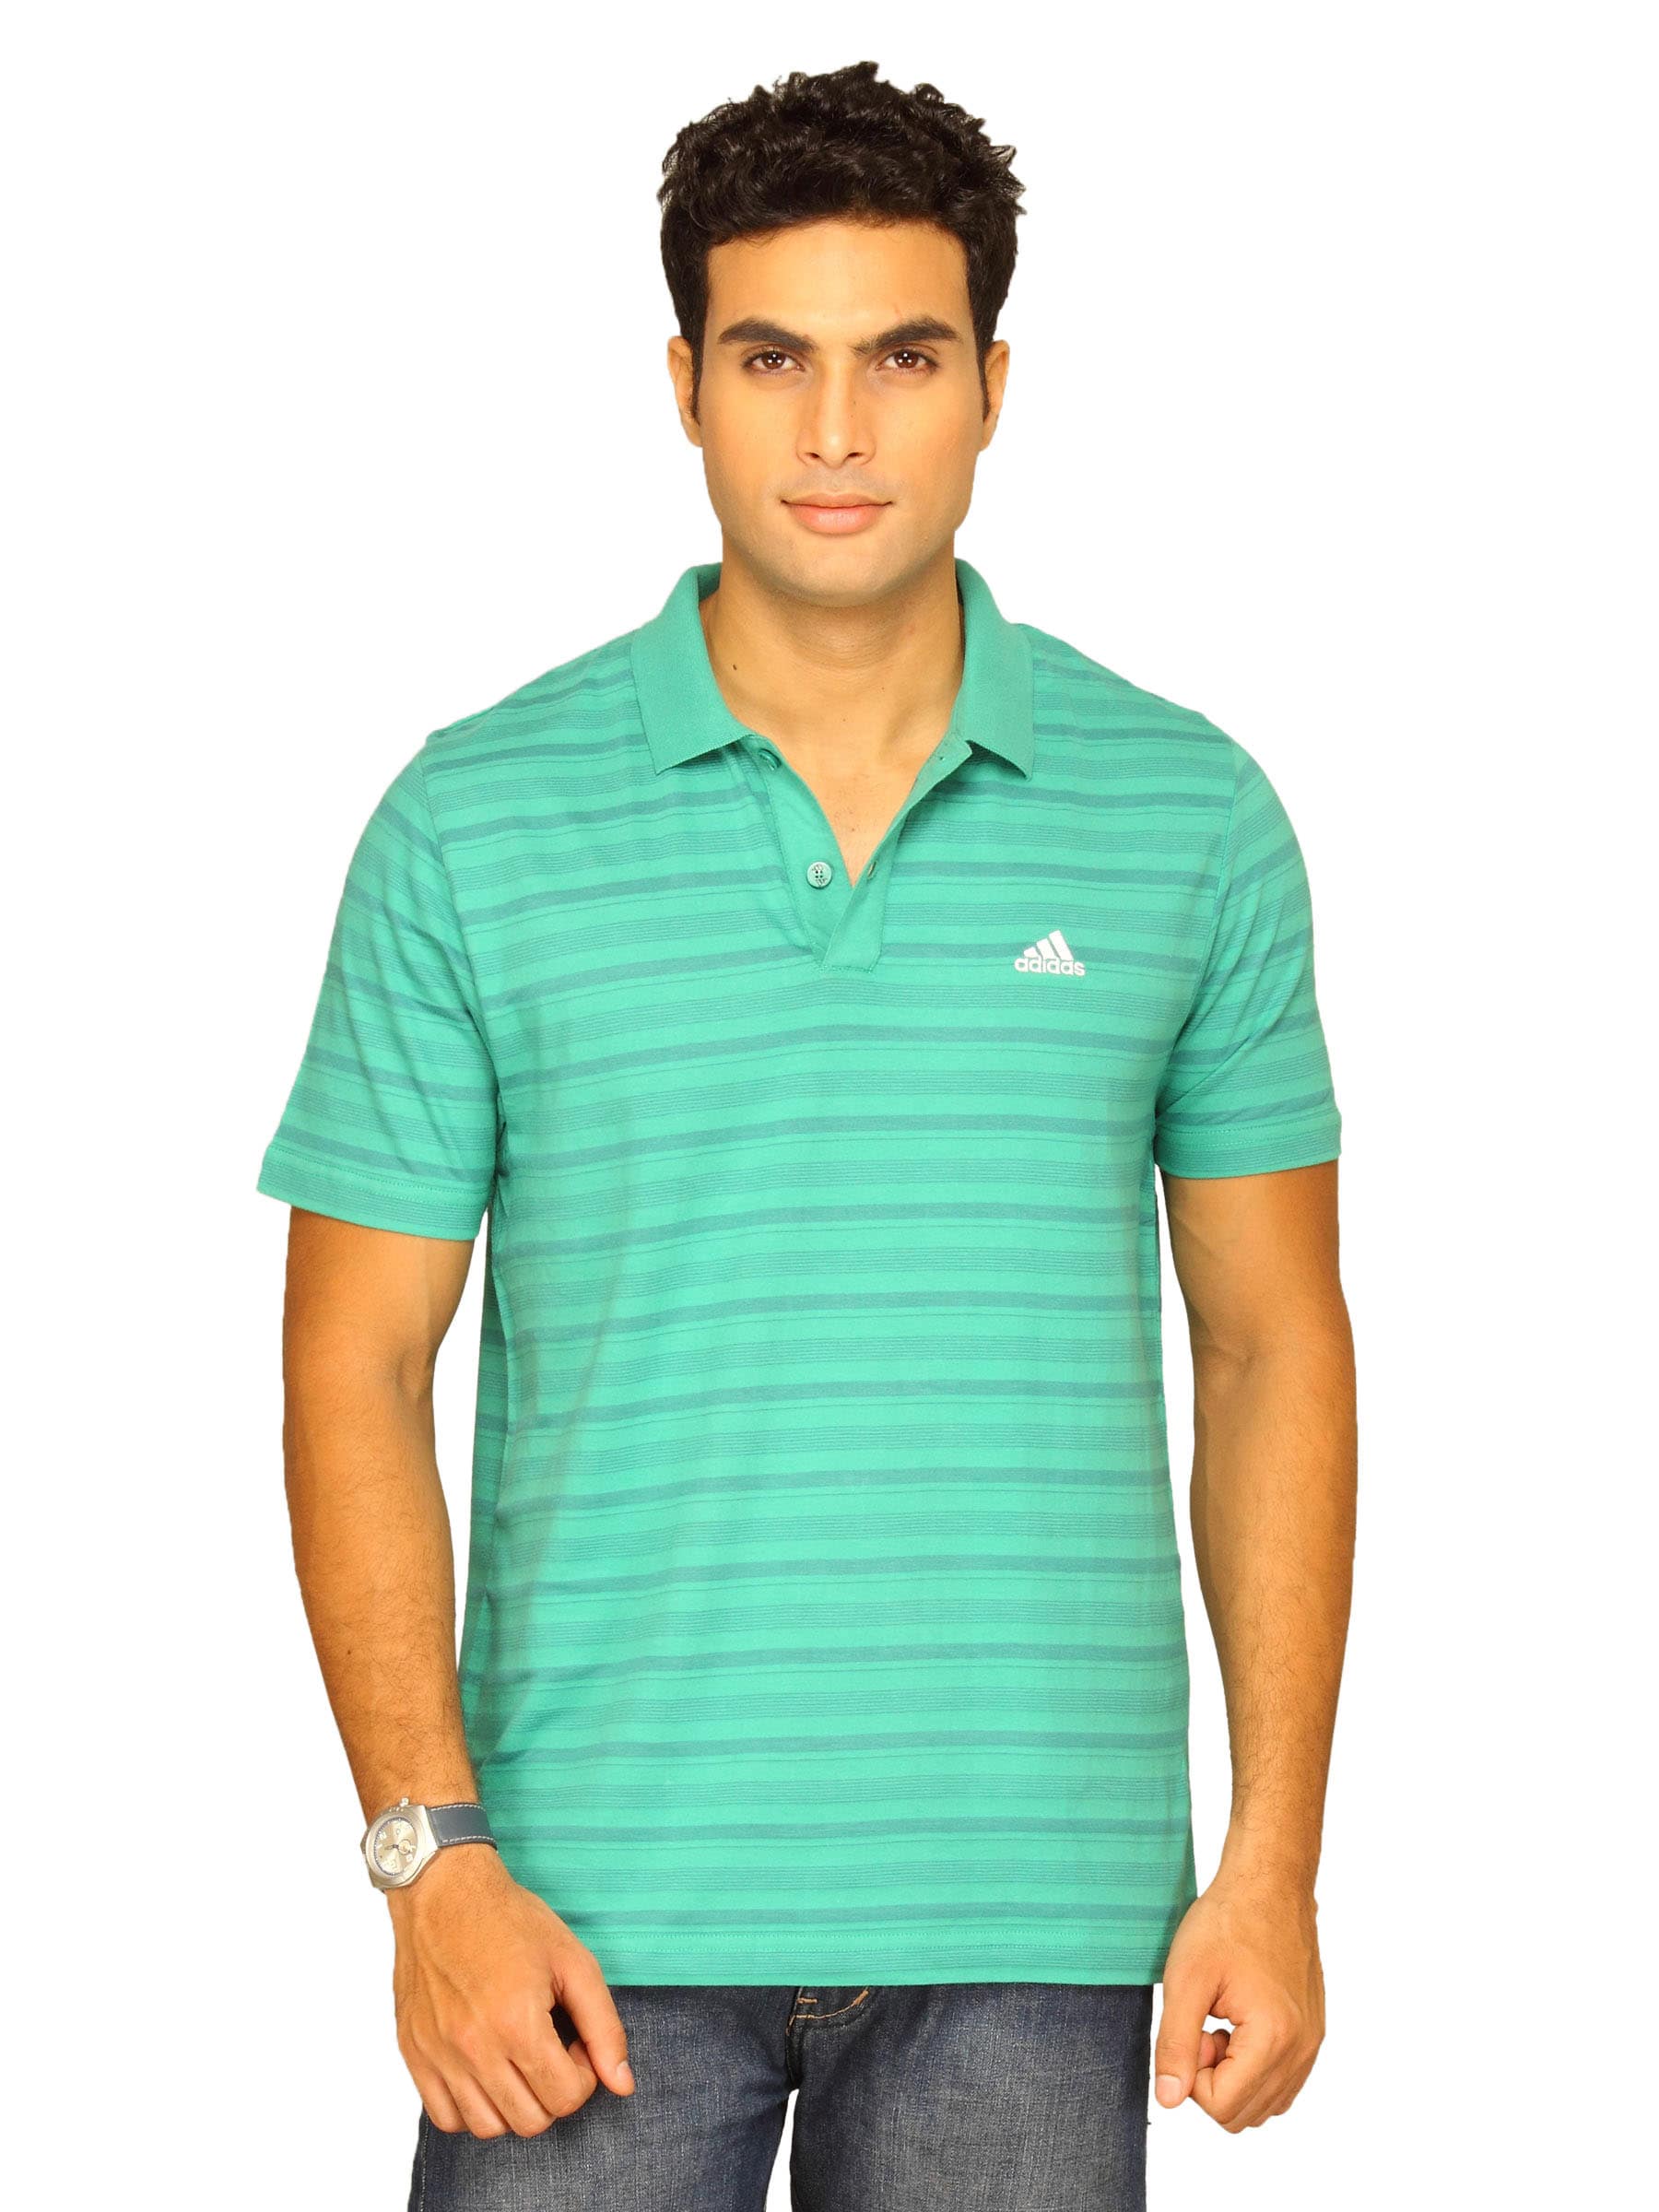 ADIDAS Men's Green Polo T-shirt